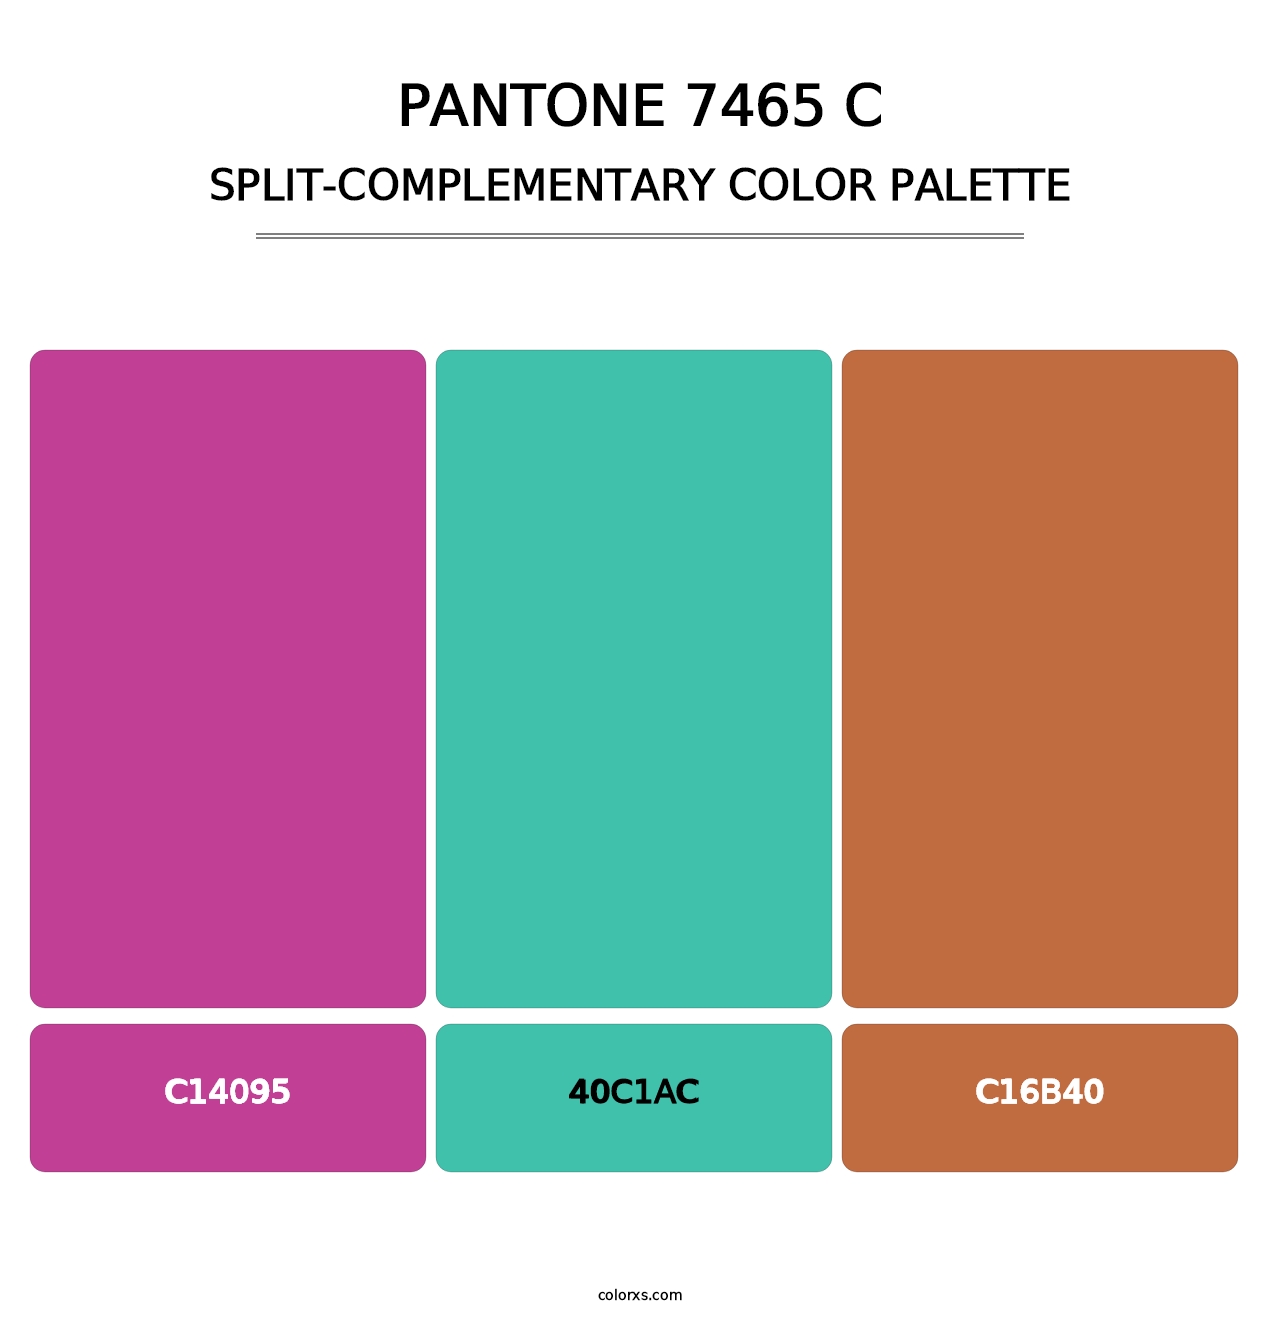 PANTONE 7465 C - Split-Complementary Color Palette